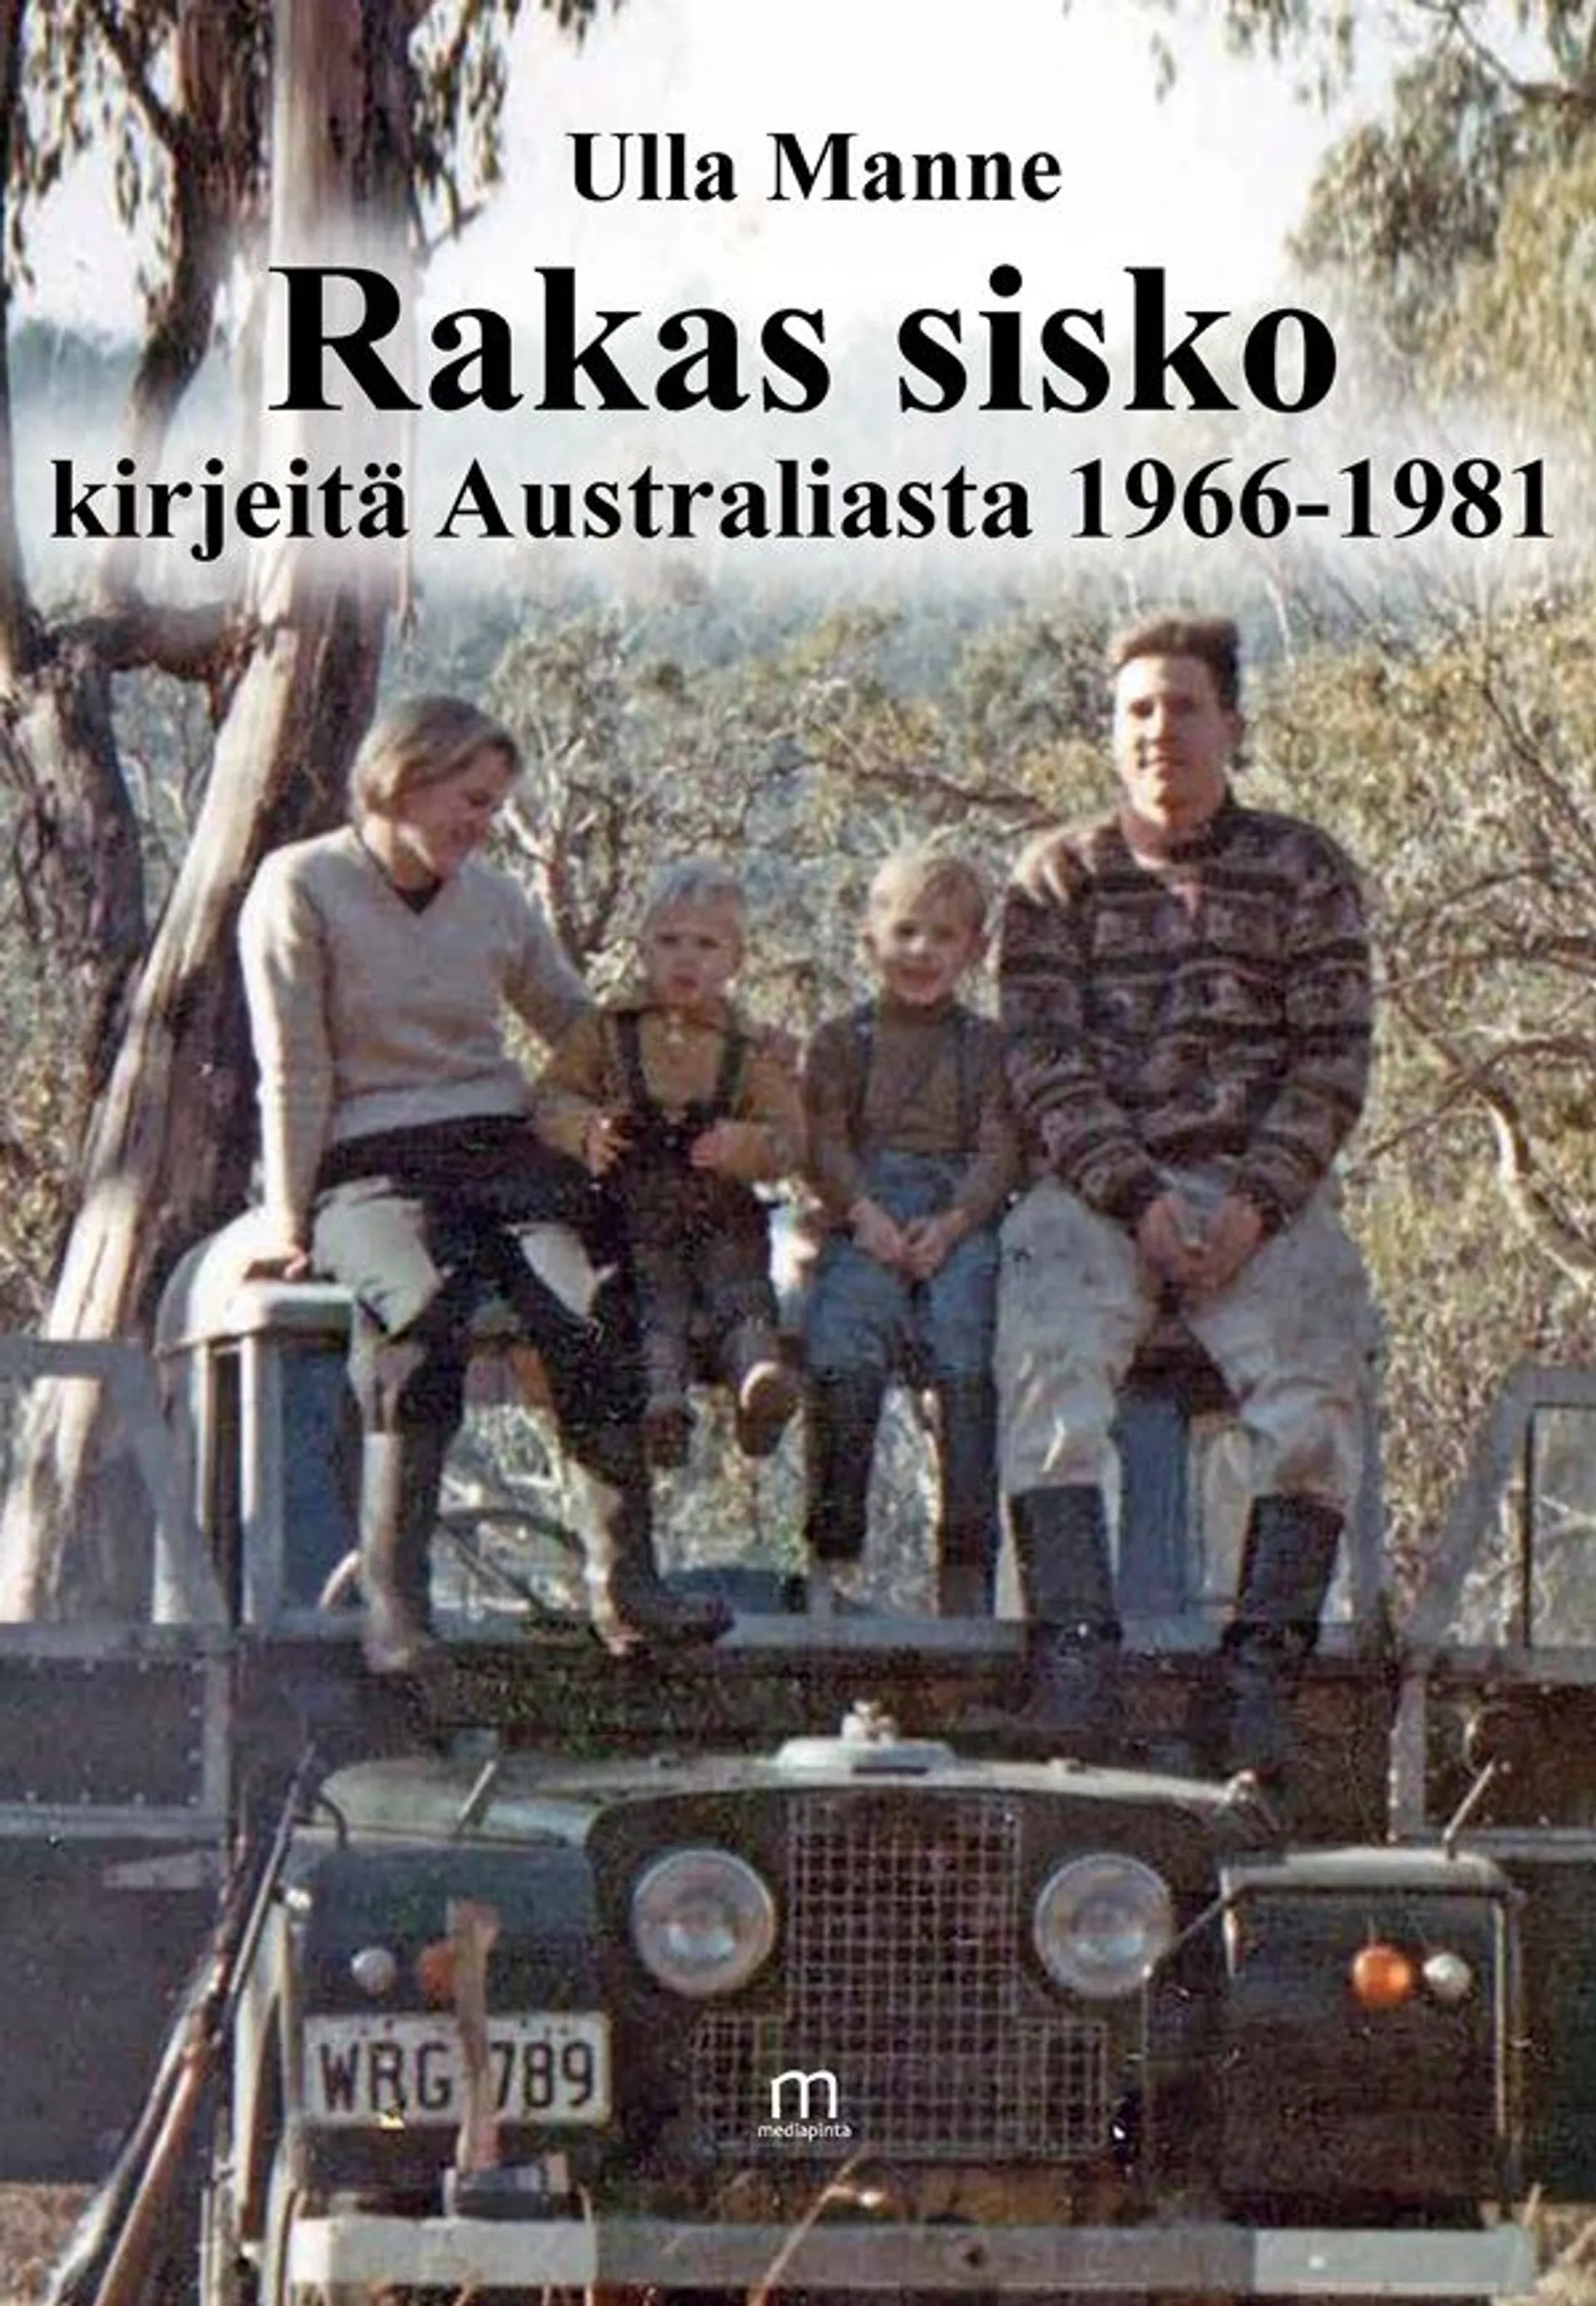 Manne Ulla, Rakas sisko, kirjeitä Australiasta 1966-1981